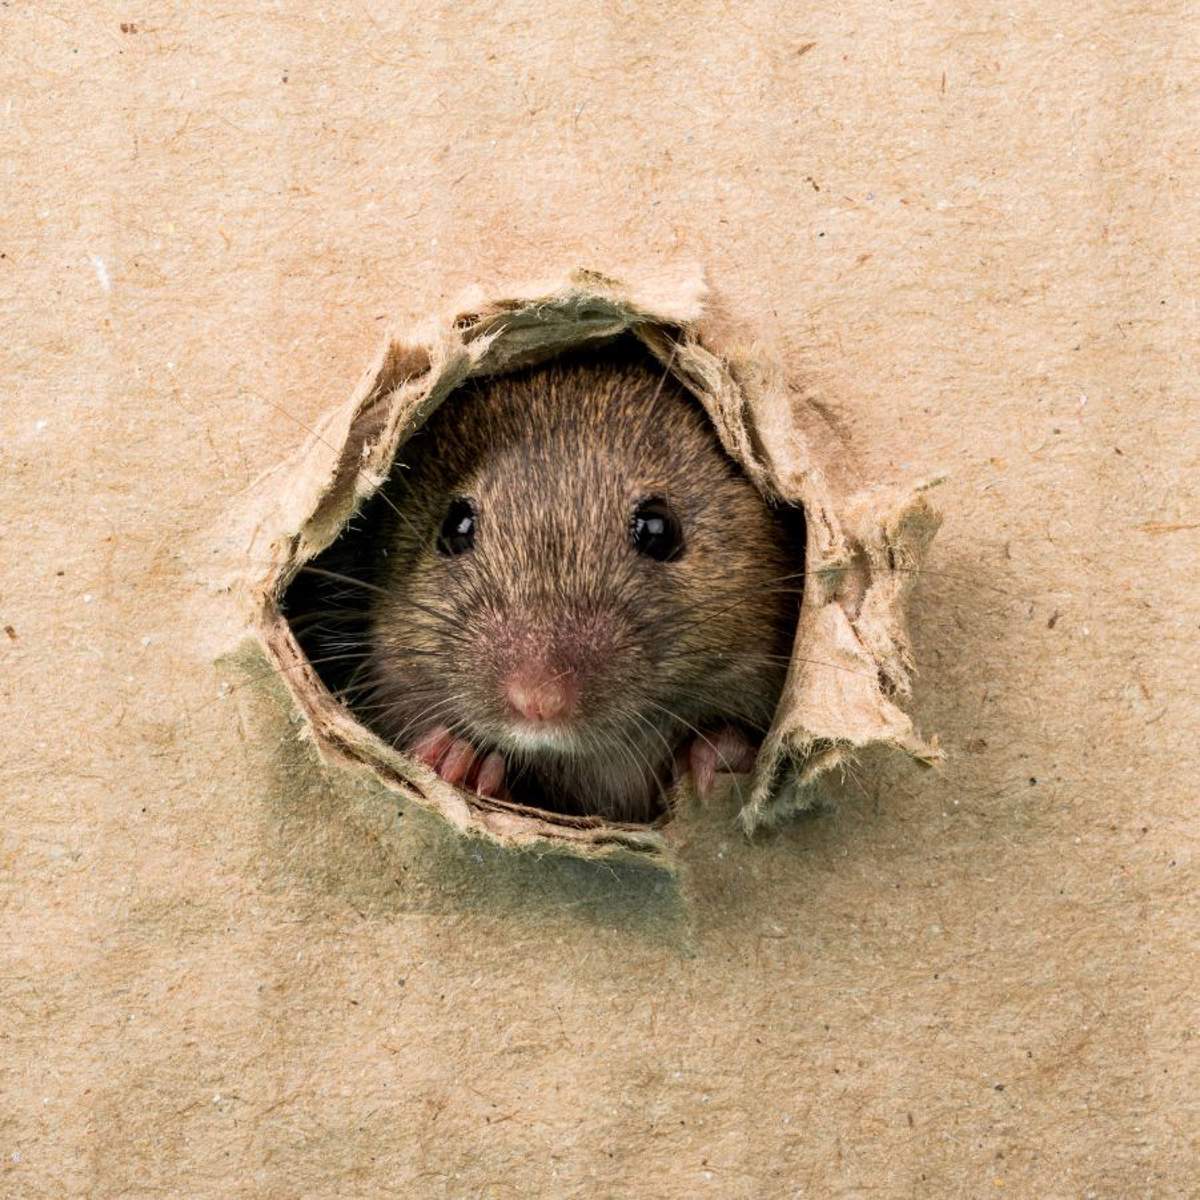 Soñar con ratas: ¿qué significa y cómo debemos interpretarlo?